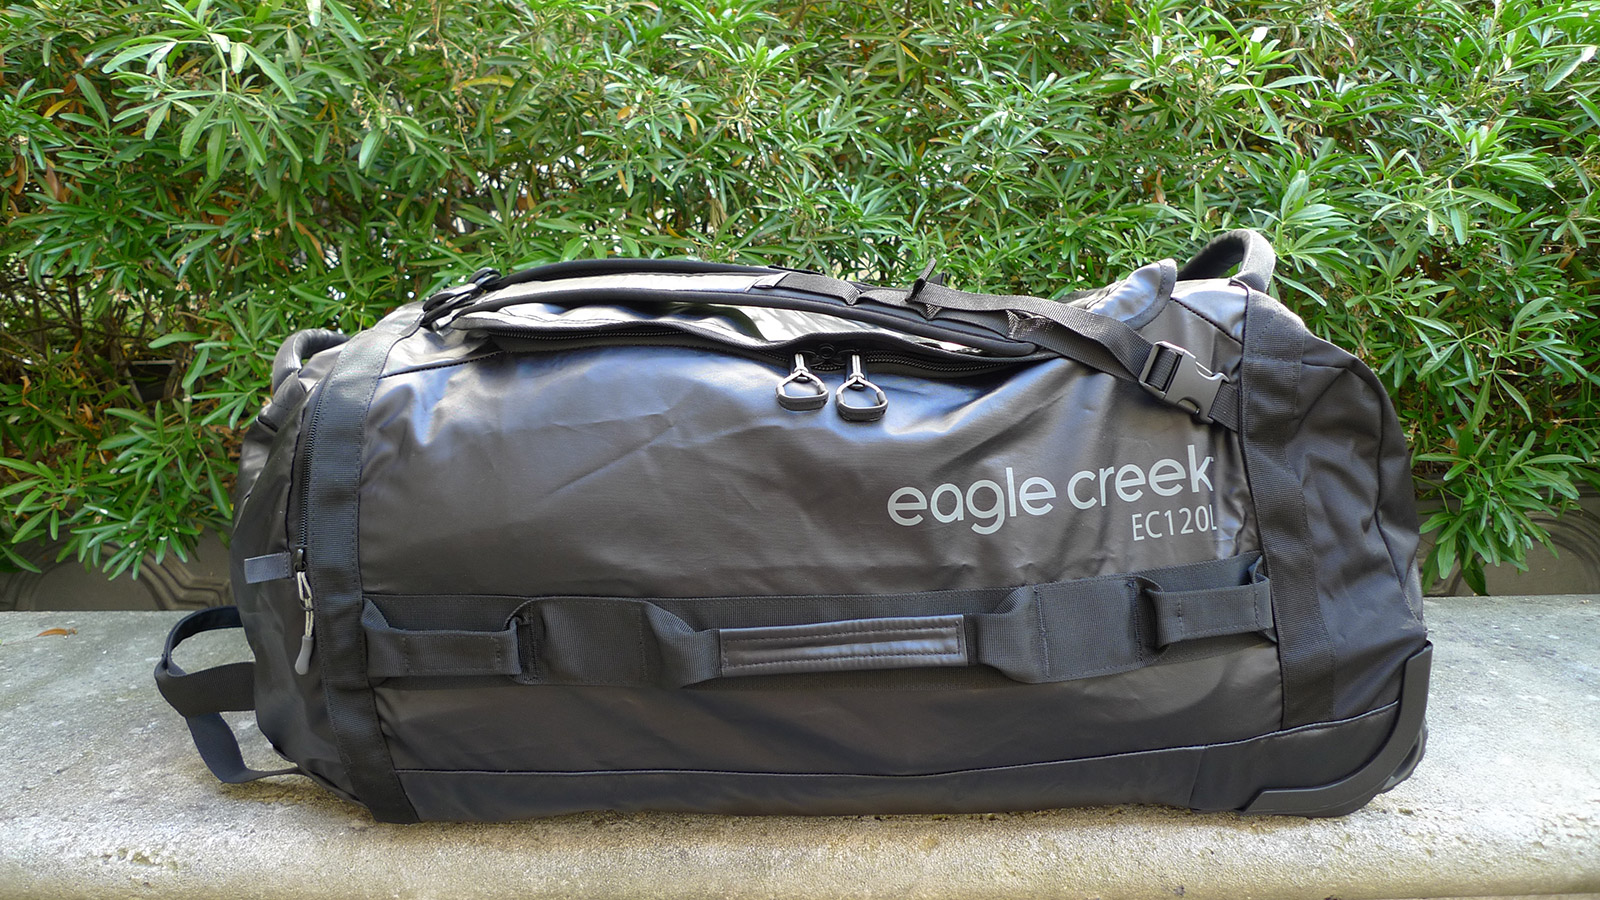 overschreden beetje Berouw Best bag split kite boards: Eagle creek Cargo Hauler Rolling Duffel review